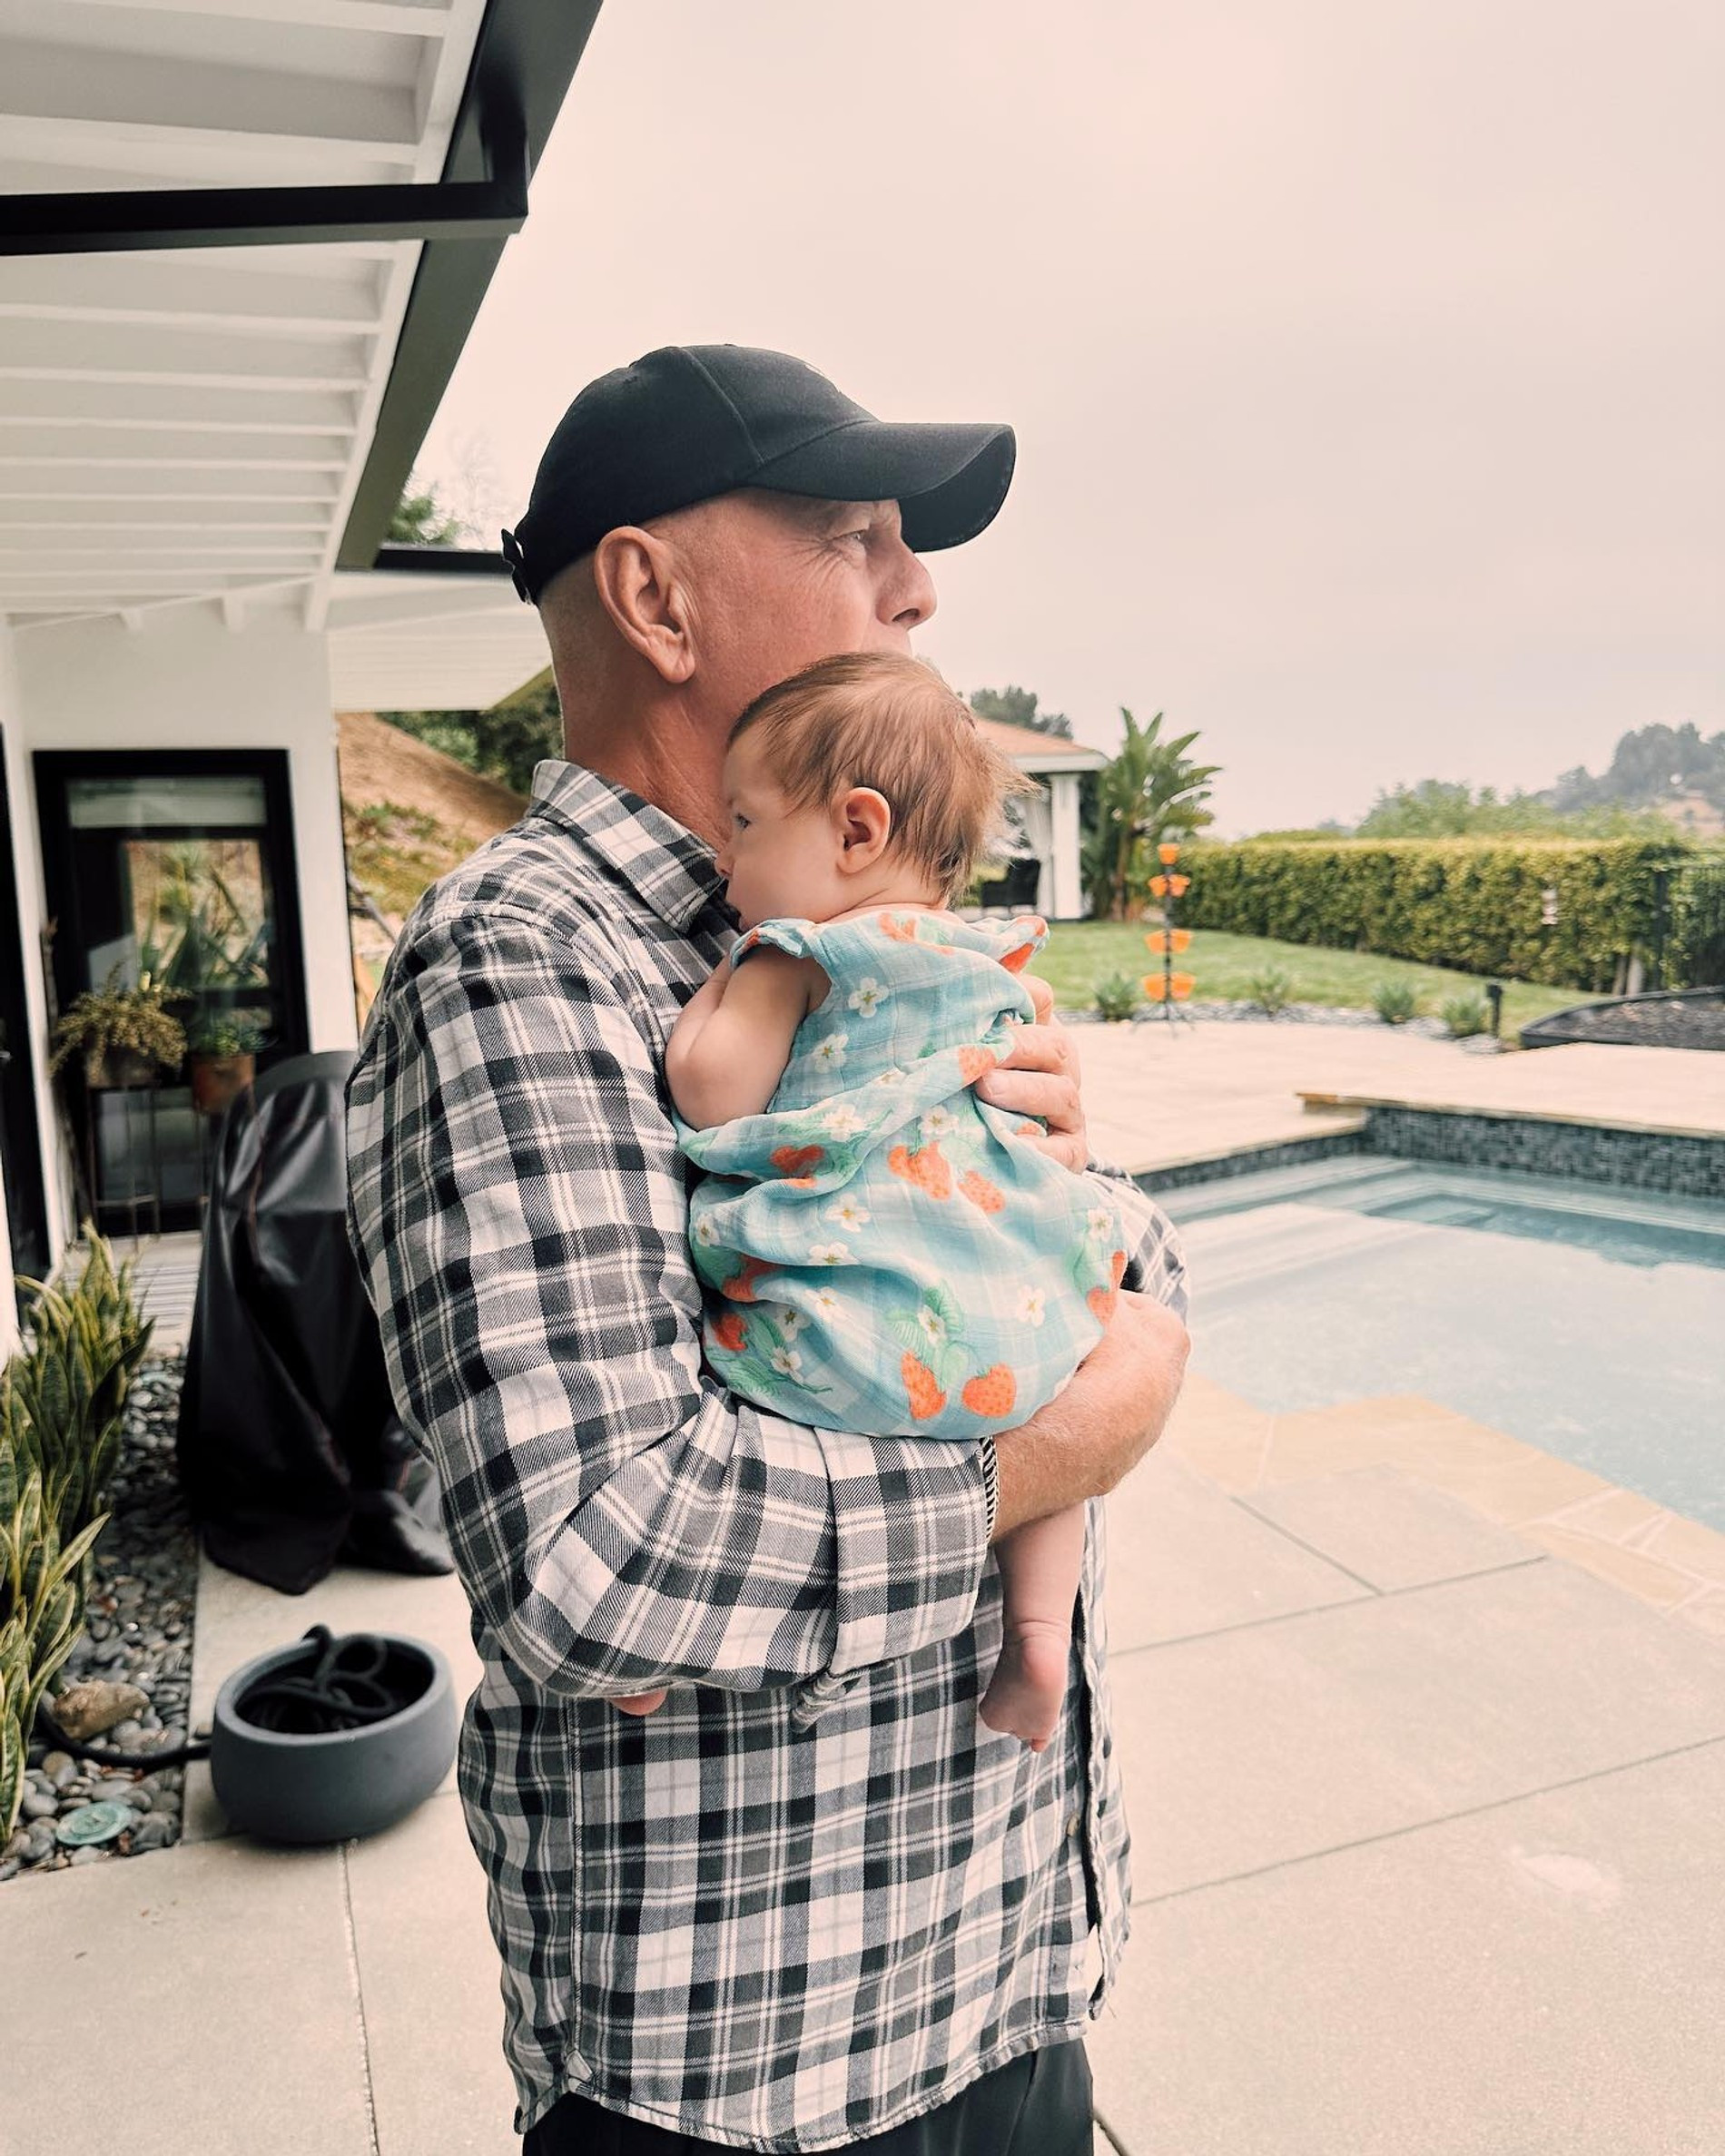 Брюс Уиллис с внучкой
Фото: Инстаграм (запрещен в РФ) @rumerwillis